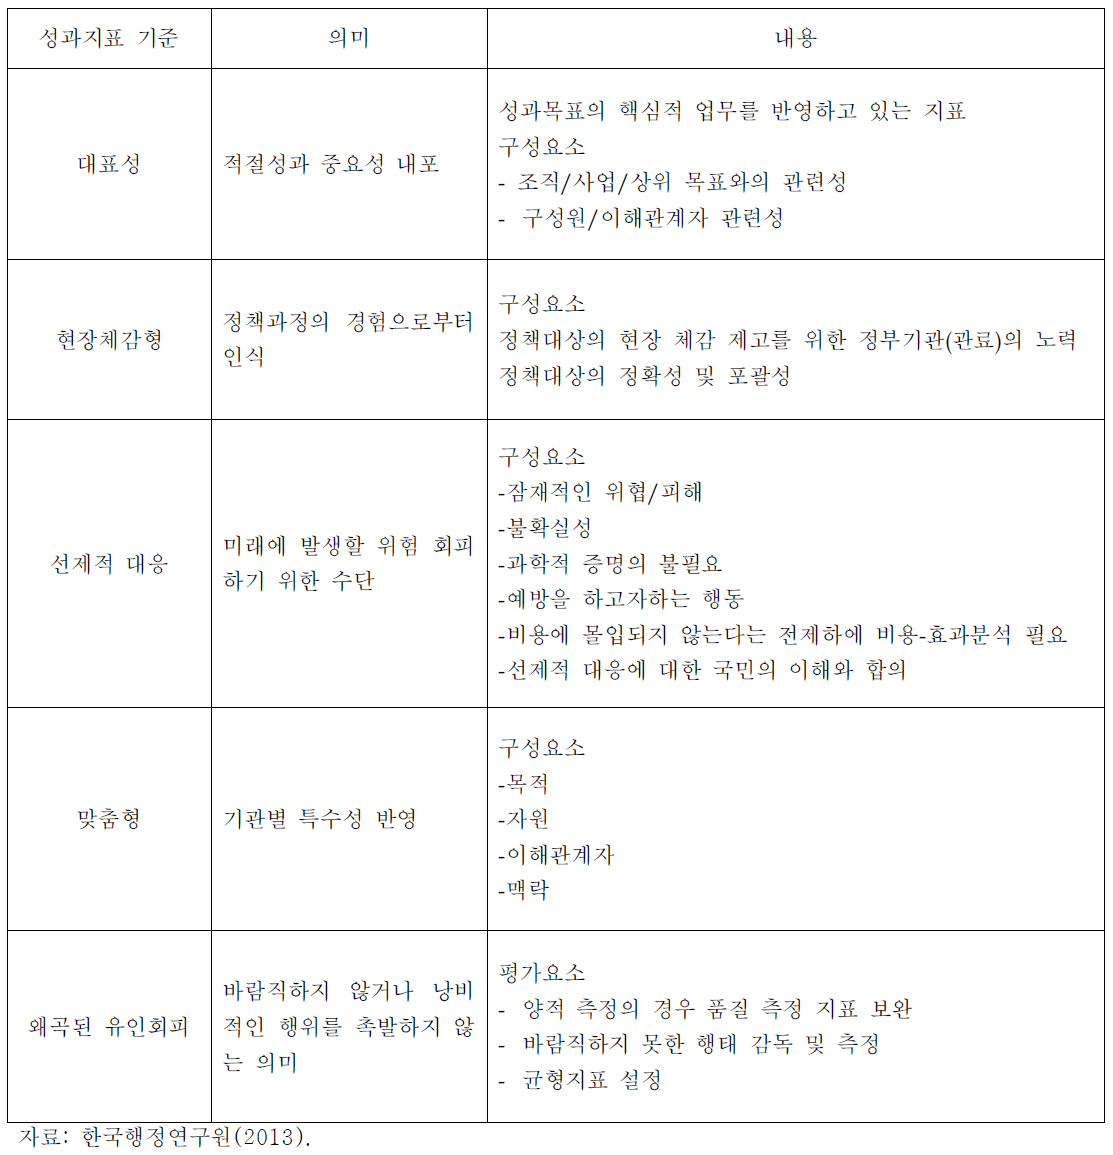 한국행정연구원의 평가지표 기준